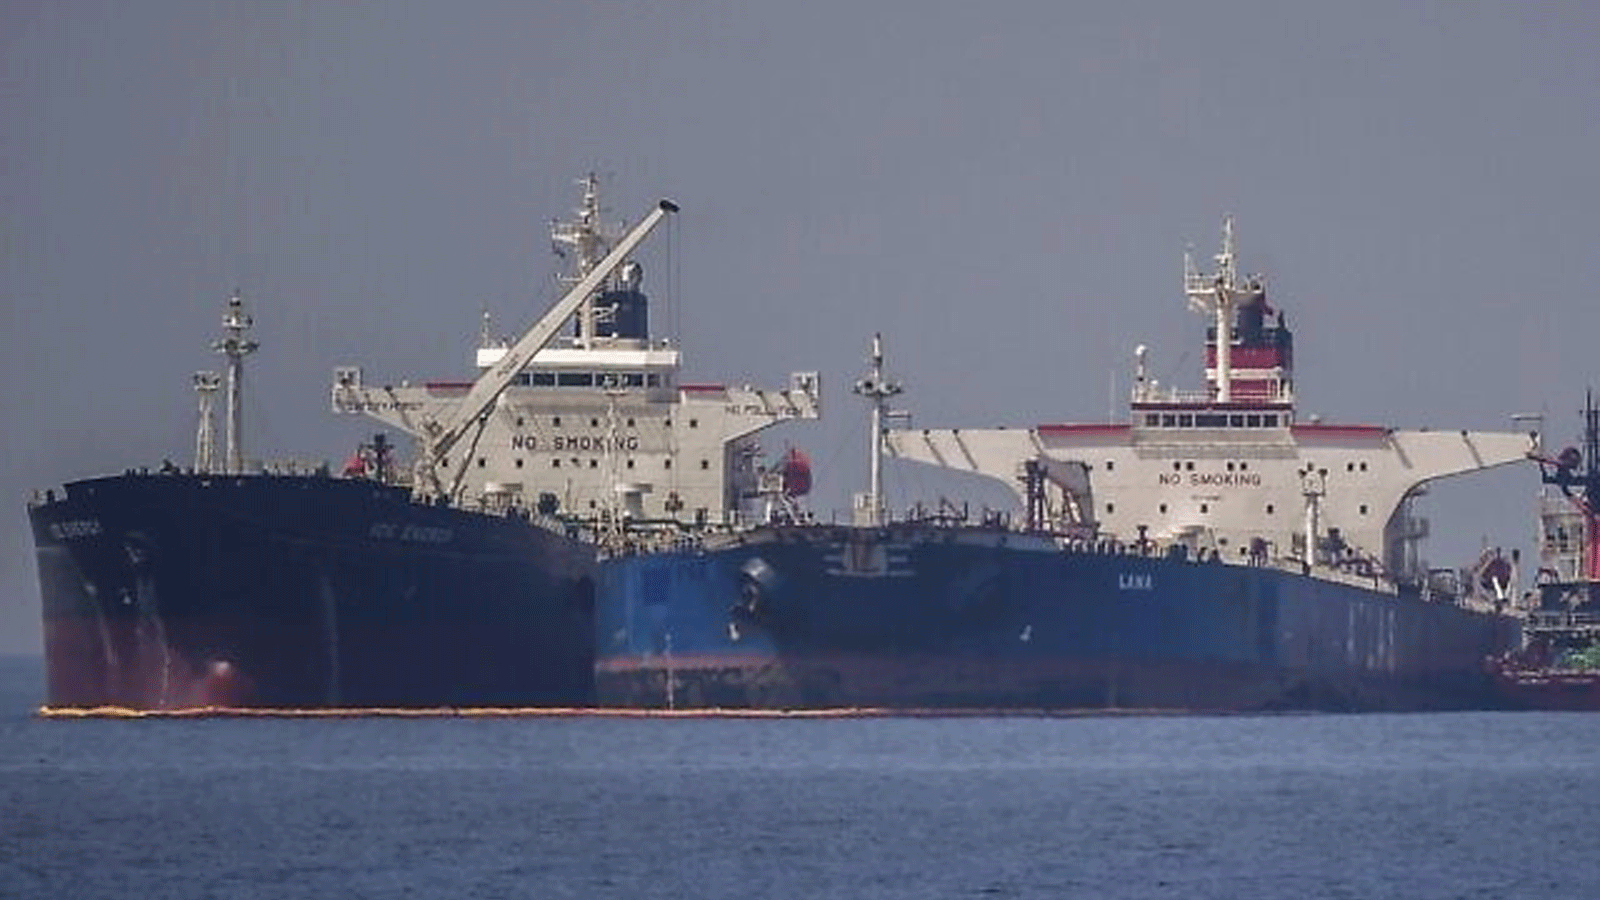 ناقلة النفط Ice Energy (L) التي ترفع العلم الليبيري النفط الخام من ناقلة النفط التي ترفع العلم الروسي Lana(R) (Pegas السابقة)، قبالة شاطئ Karystos، في جزيرة Evia، في 29 مايو 2022.